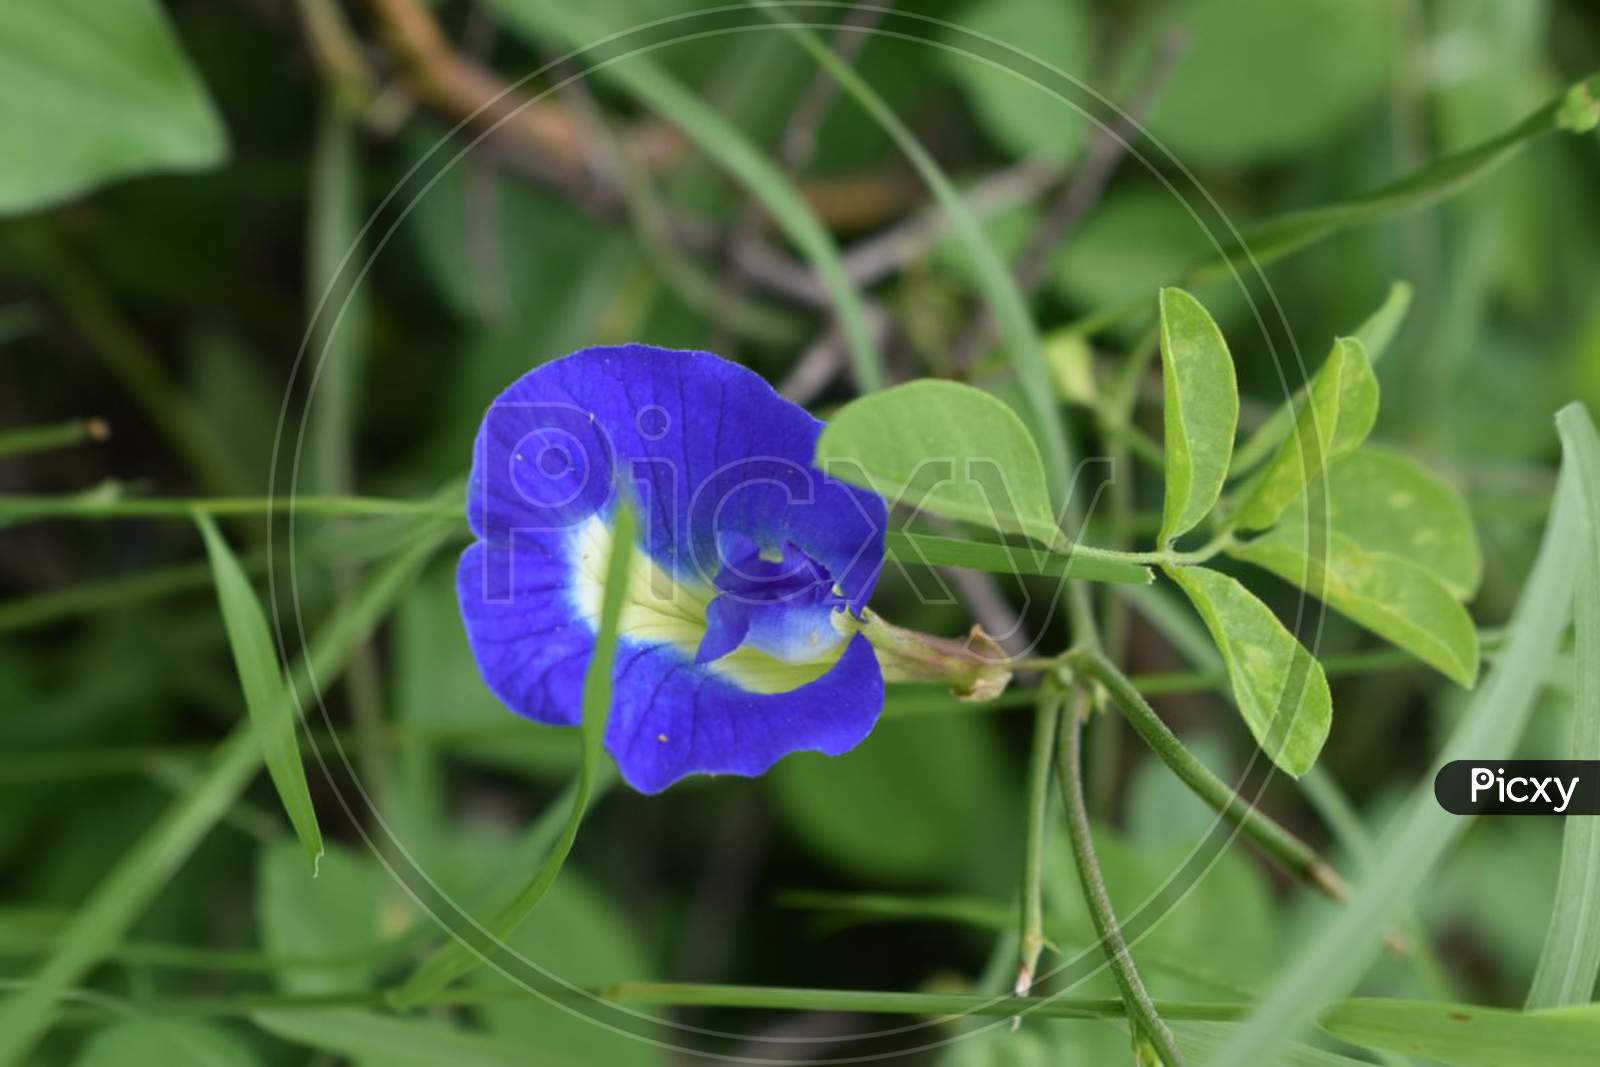 A beautiful blue flower